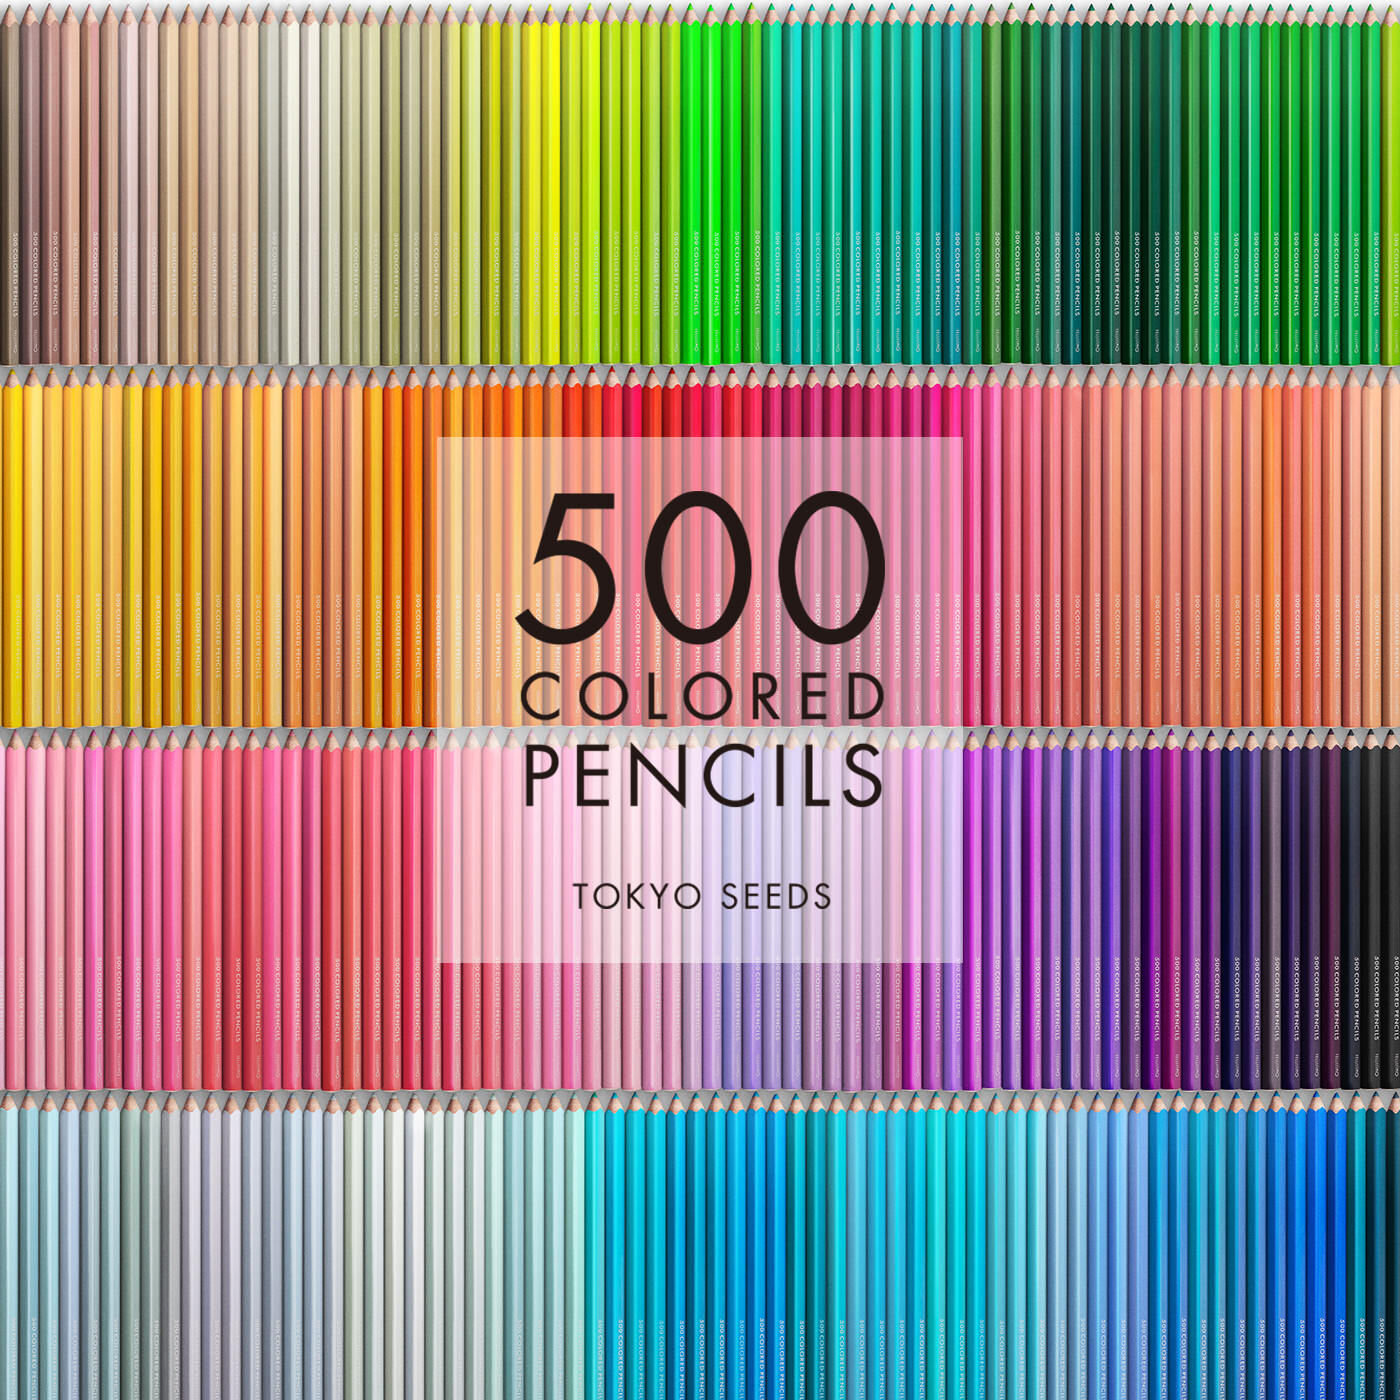 Real Stock|【383/500 GLASS SLIPPER】500色の色えんぴつ TOKYO SEEDS|1992年、世界初の「500色」という膨大な色数の色えんぴつが誕生して以来、その販売数は発売当初から合わせると、世界55ヵ国10万セット以上。今回、メイド・イン・ジャパンにこだわり、すべてが新しく生まれ変わって登場しました。